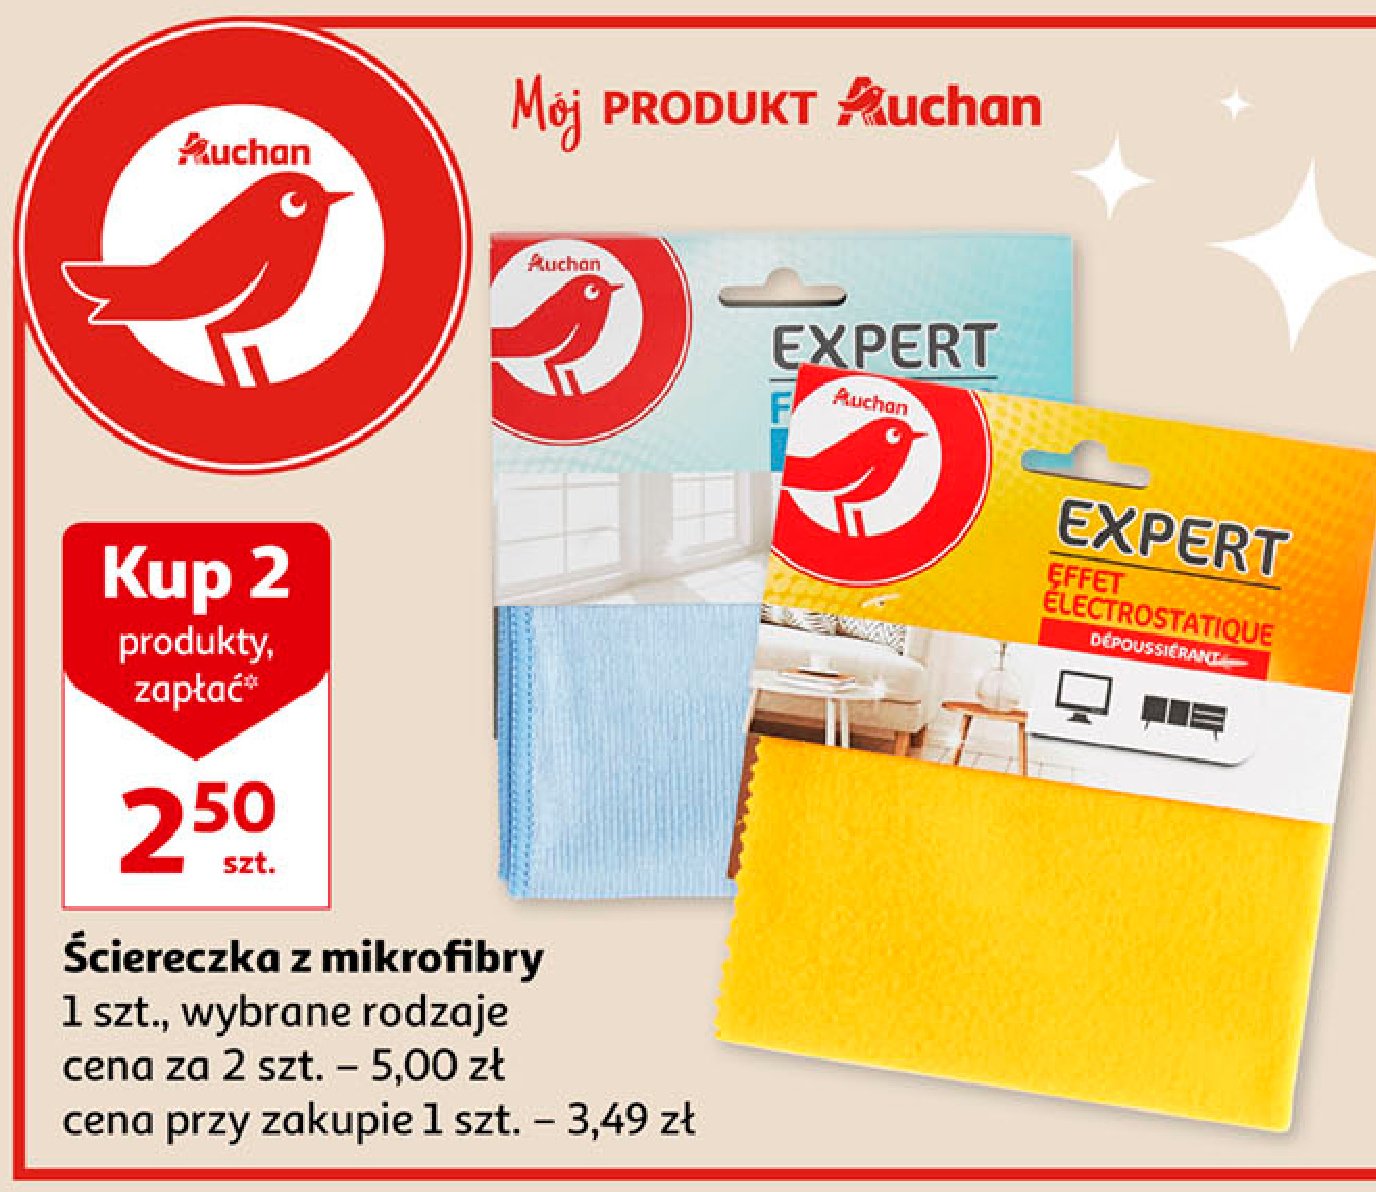 Ściereczka z mikrofibry do kurzu Auchan różnorodne (logo czerwone) promocja